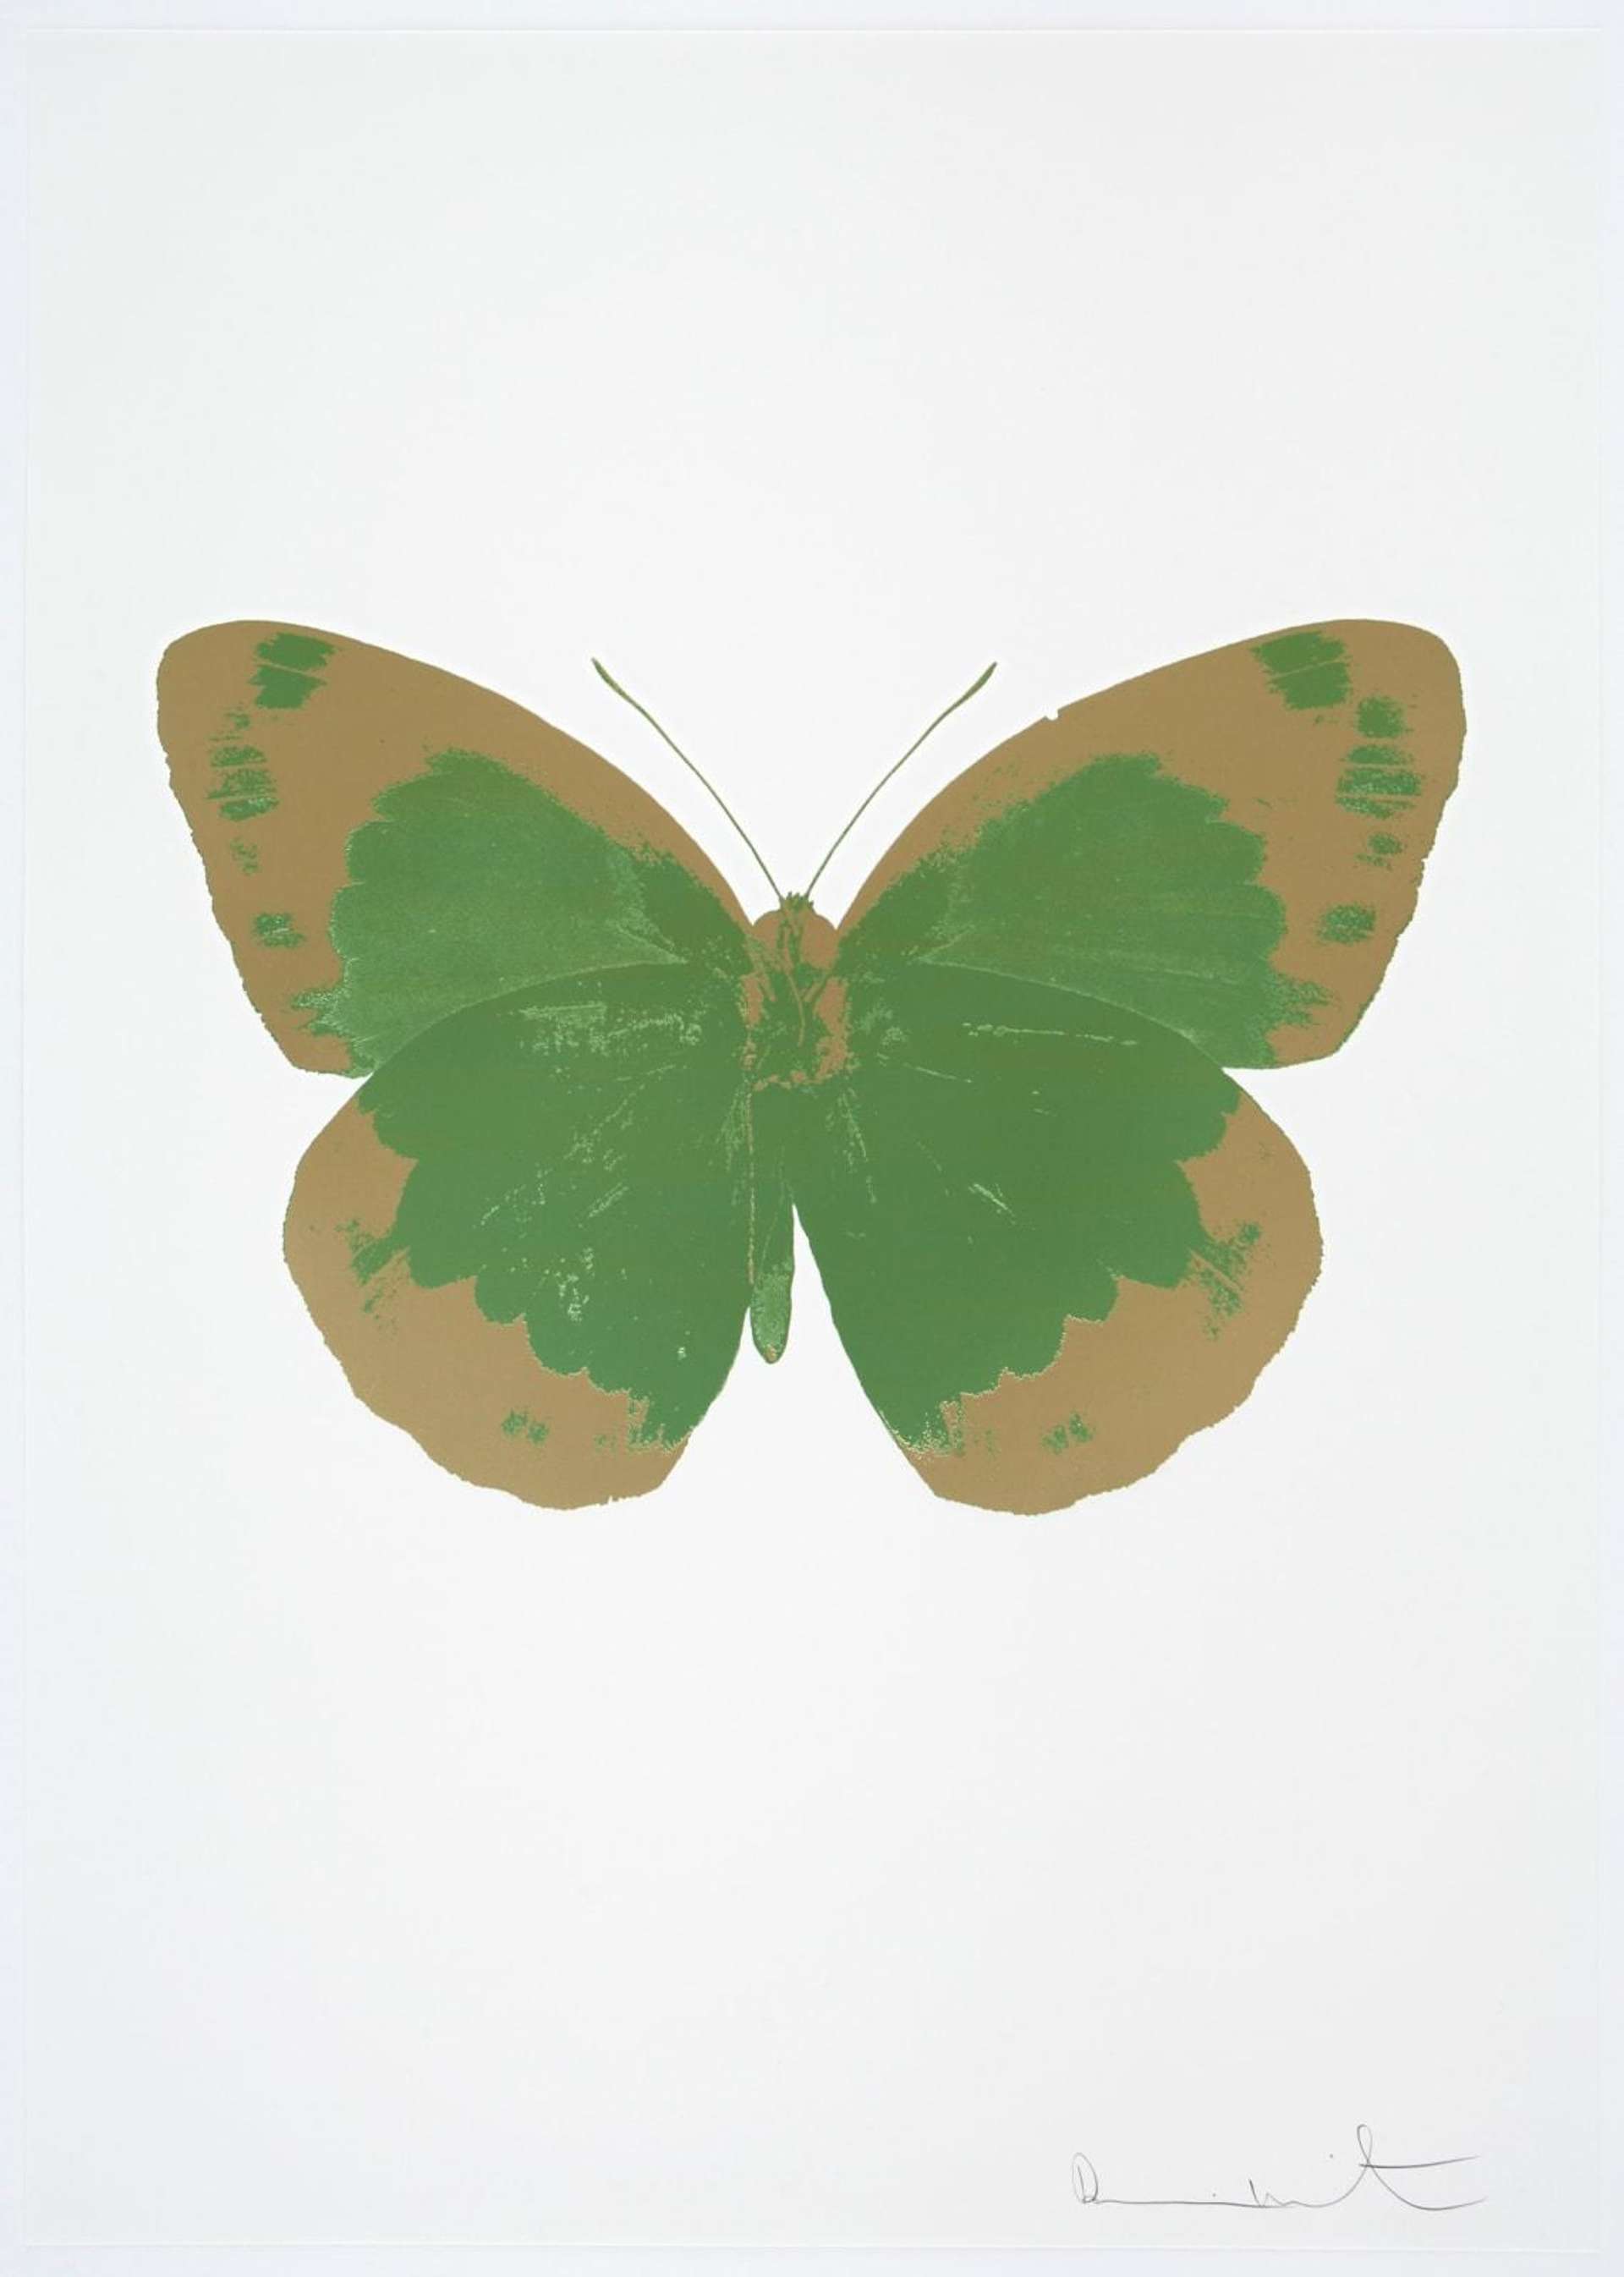 Damien Hirst: The Souls II (leaf green, cool gold, blind impression) - Signed Print